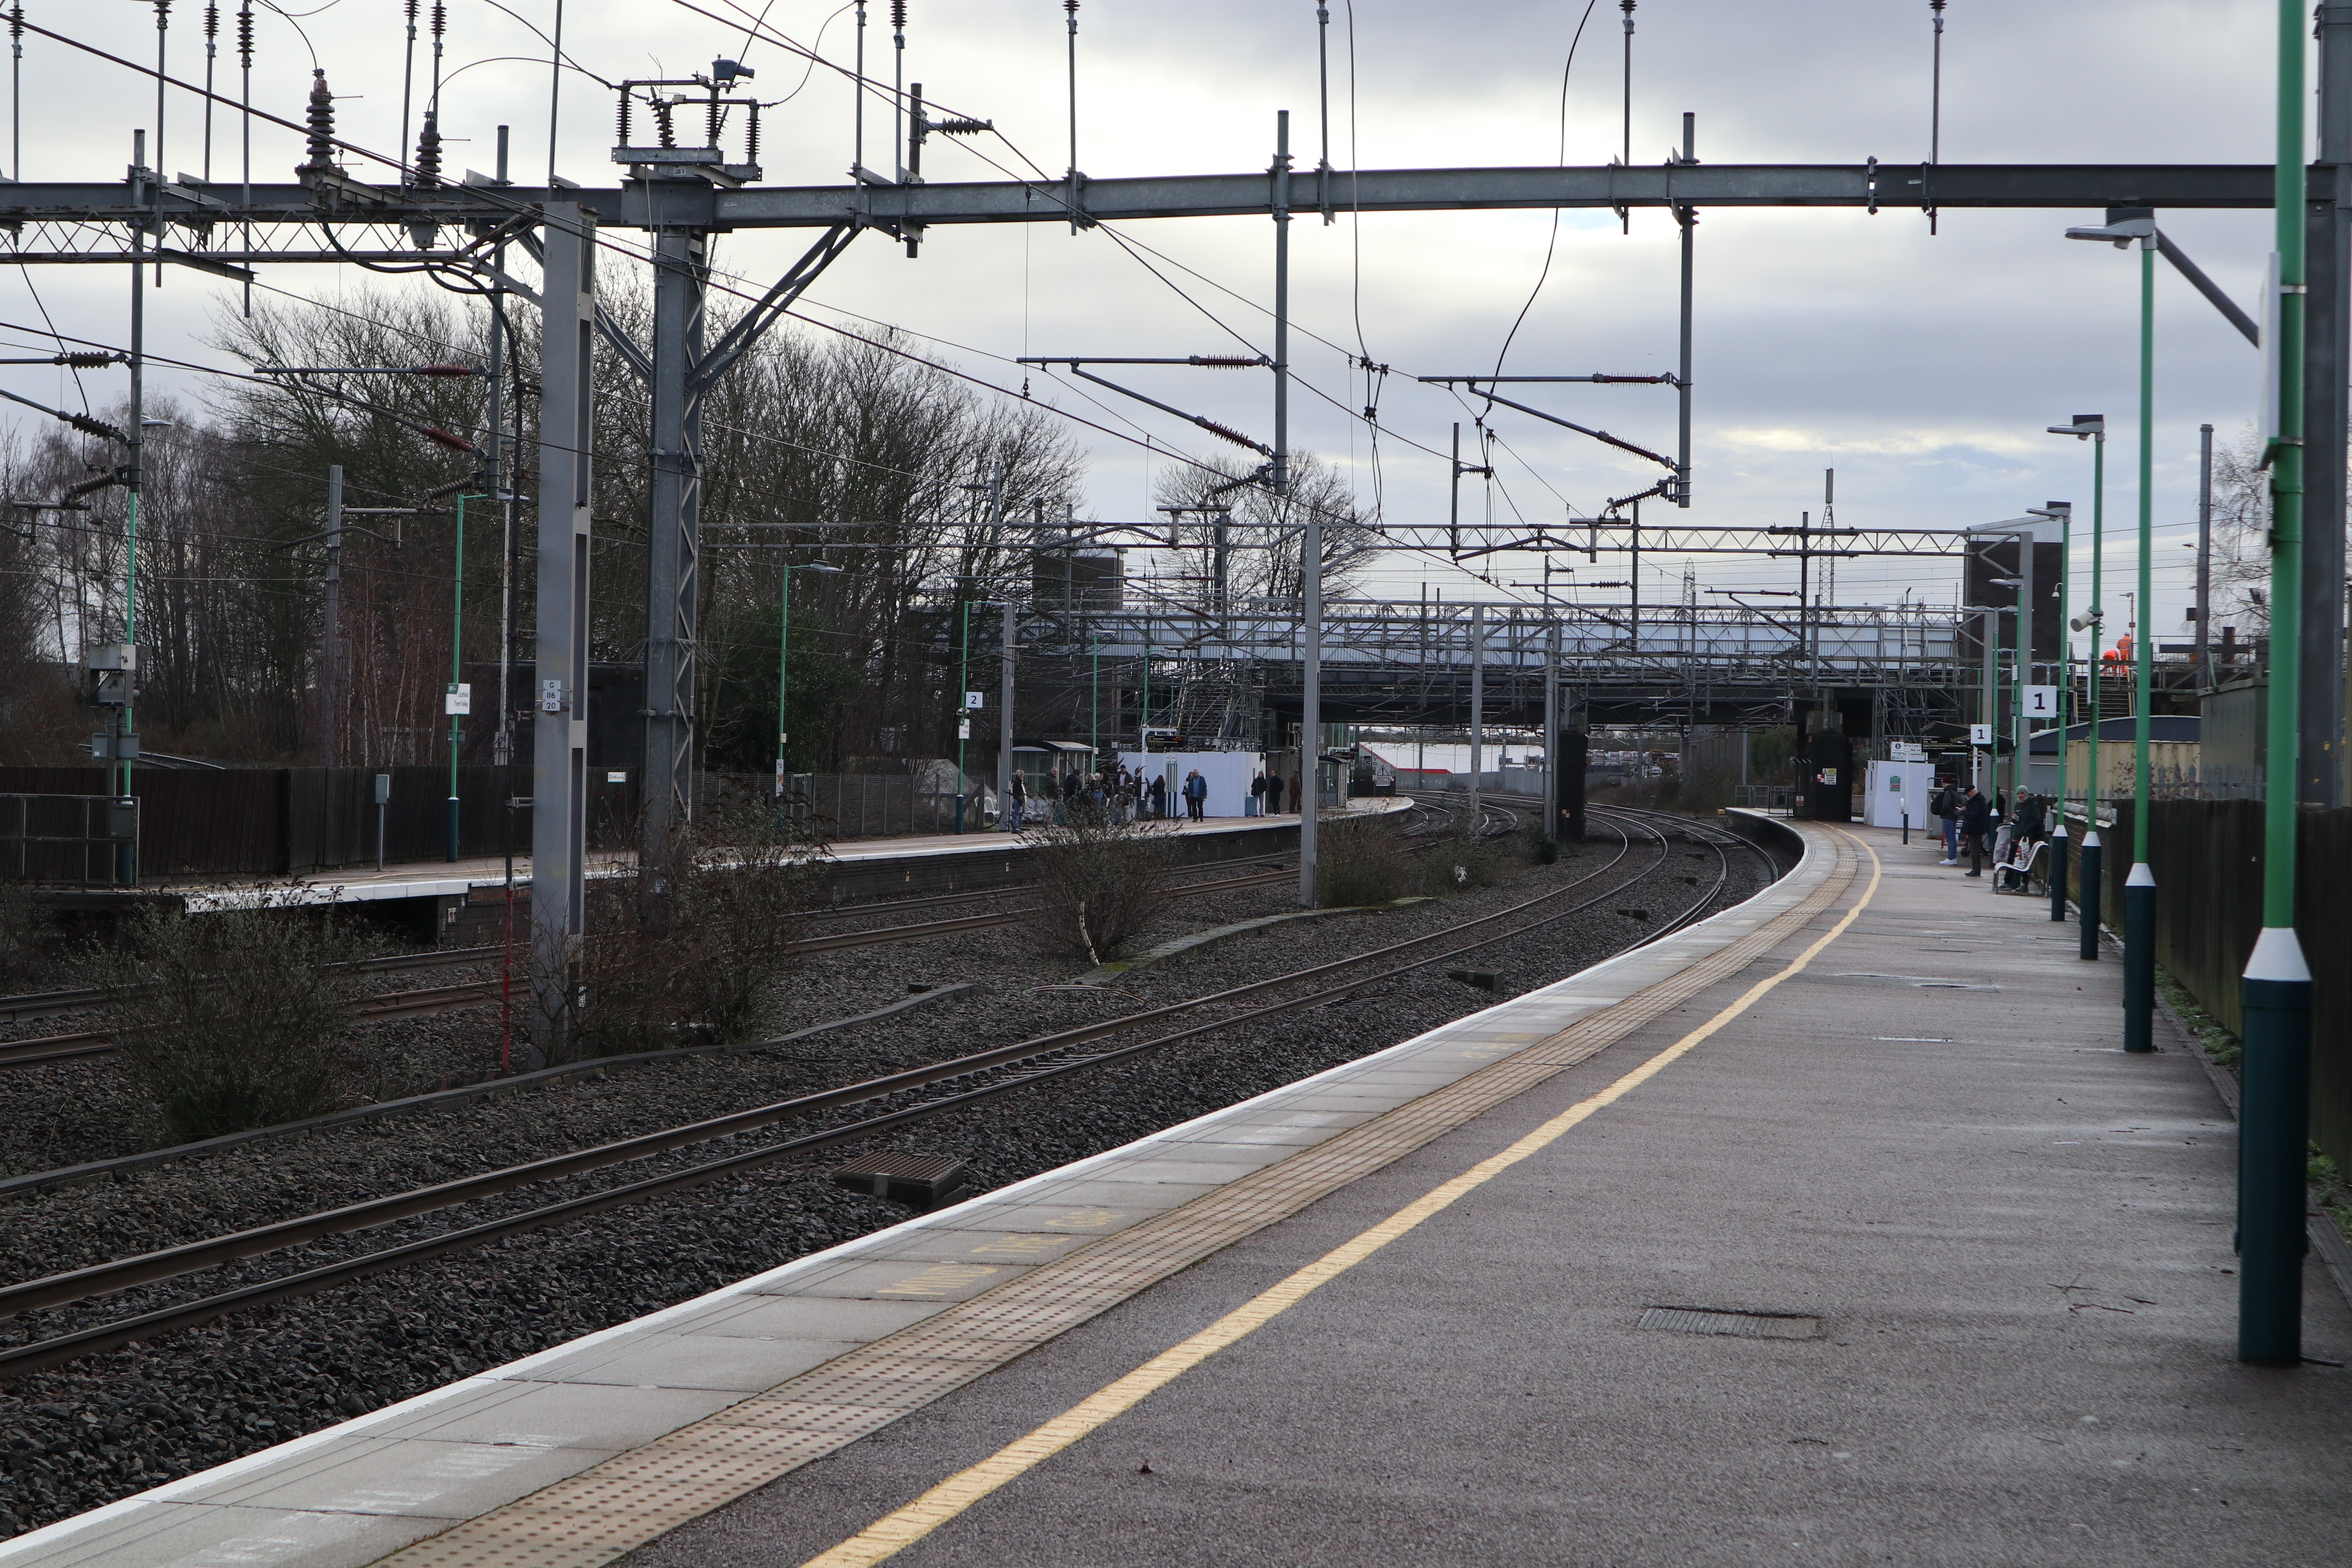 Lichfield Trent Valley railway station